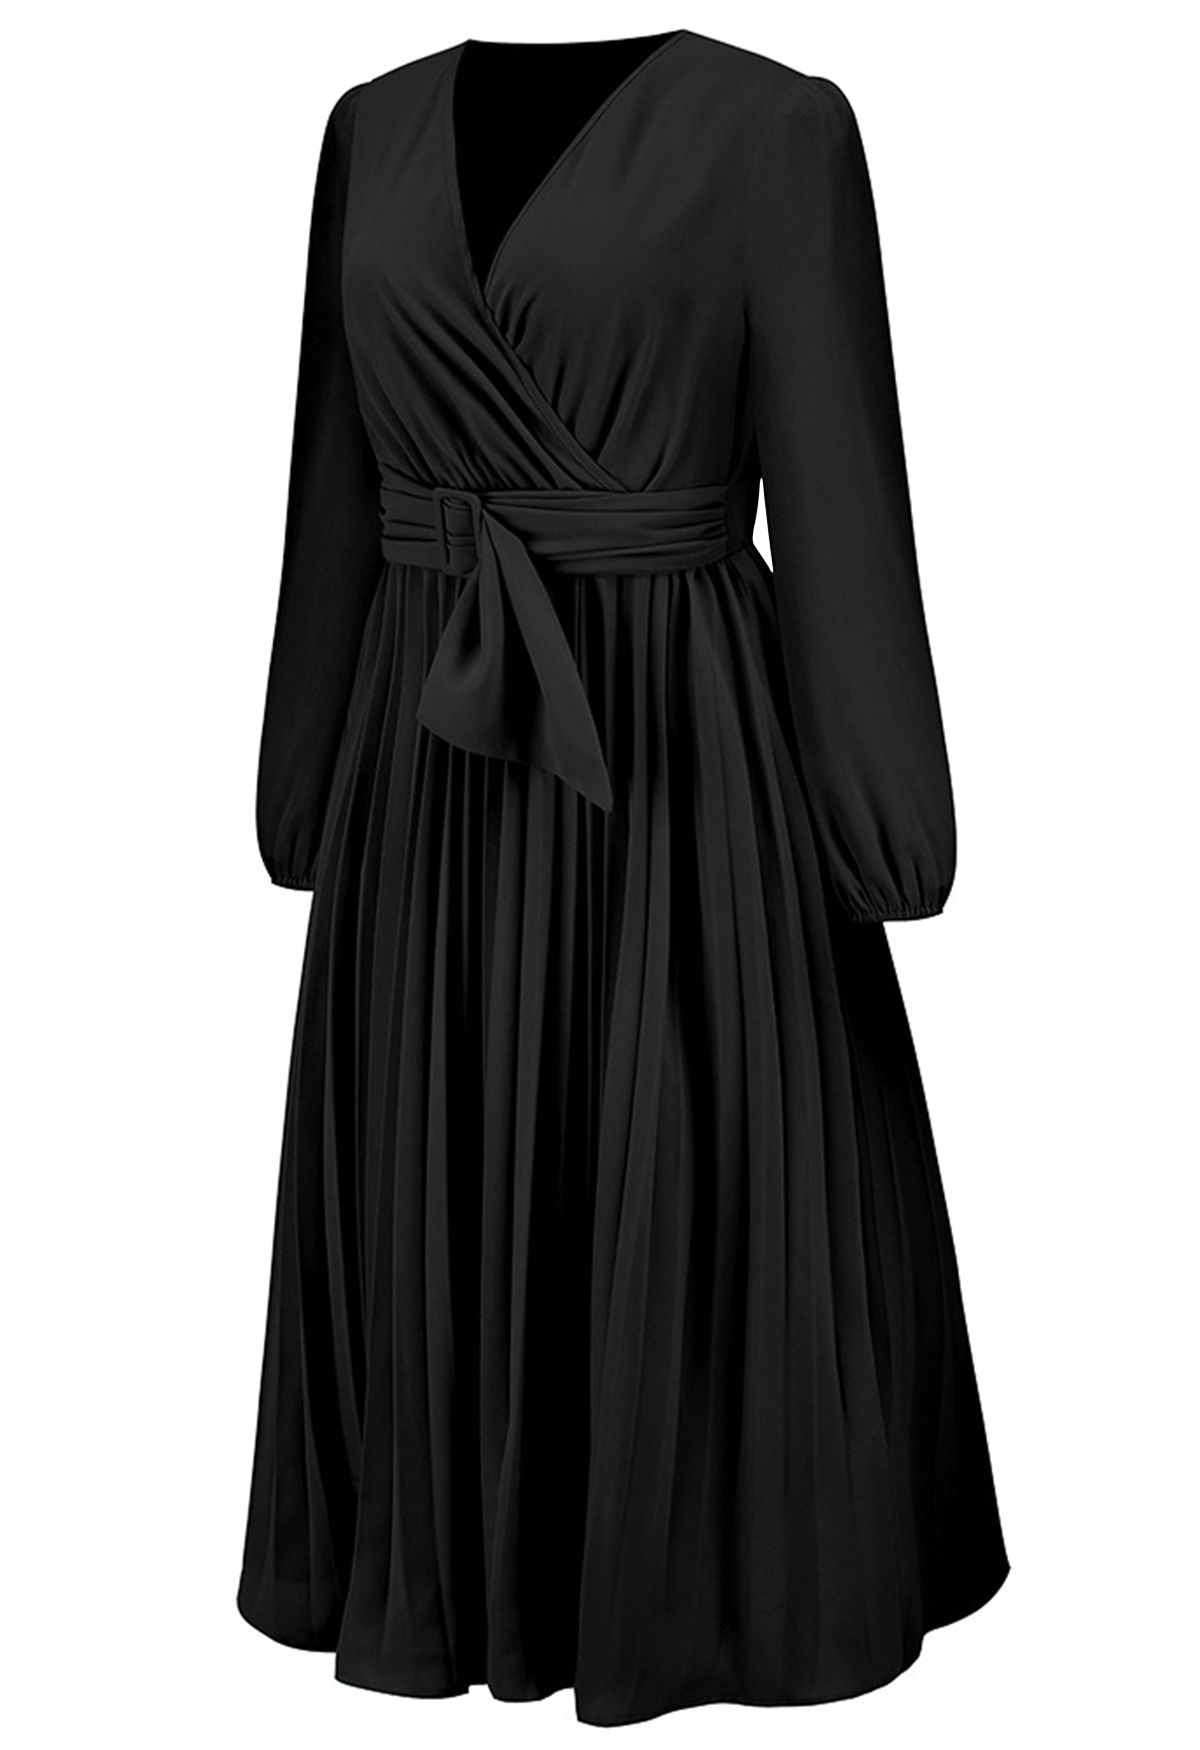 Wickelkleid mit Gürtelschnalle vorne in Schwarz